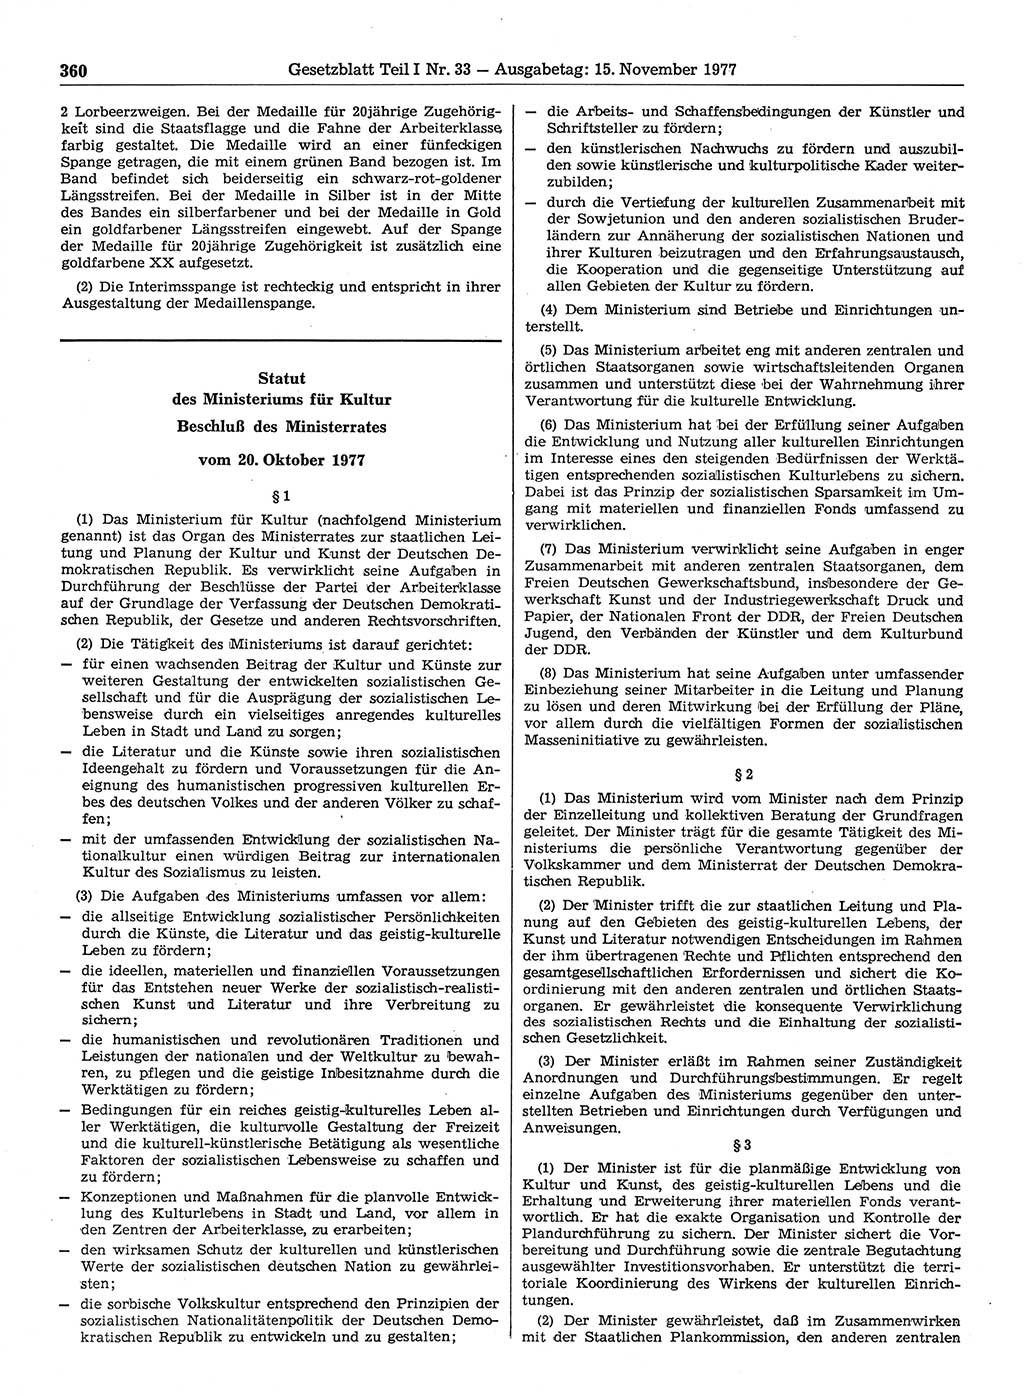 Gesetzblatt (GBl.) der Deutschen Demokratischen Republik (DDR) Teil Ⅰ 1977, Seite 360 (GBl. DDR Ⅰ 1977, S. 360)